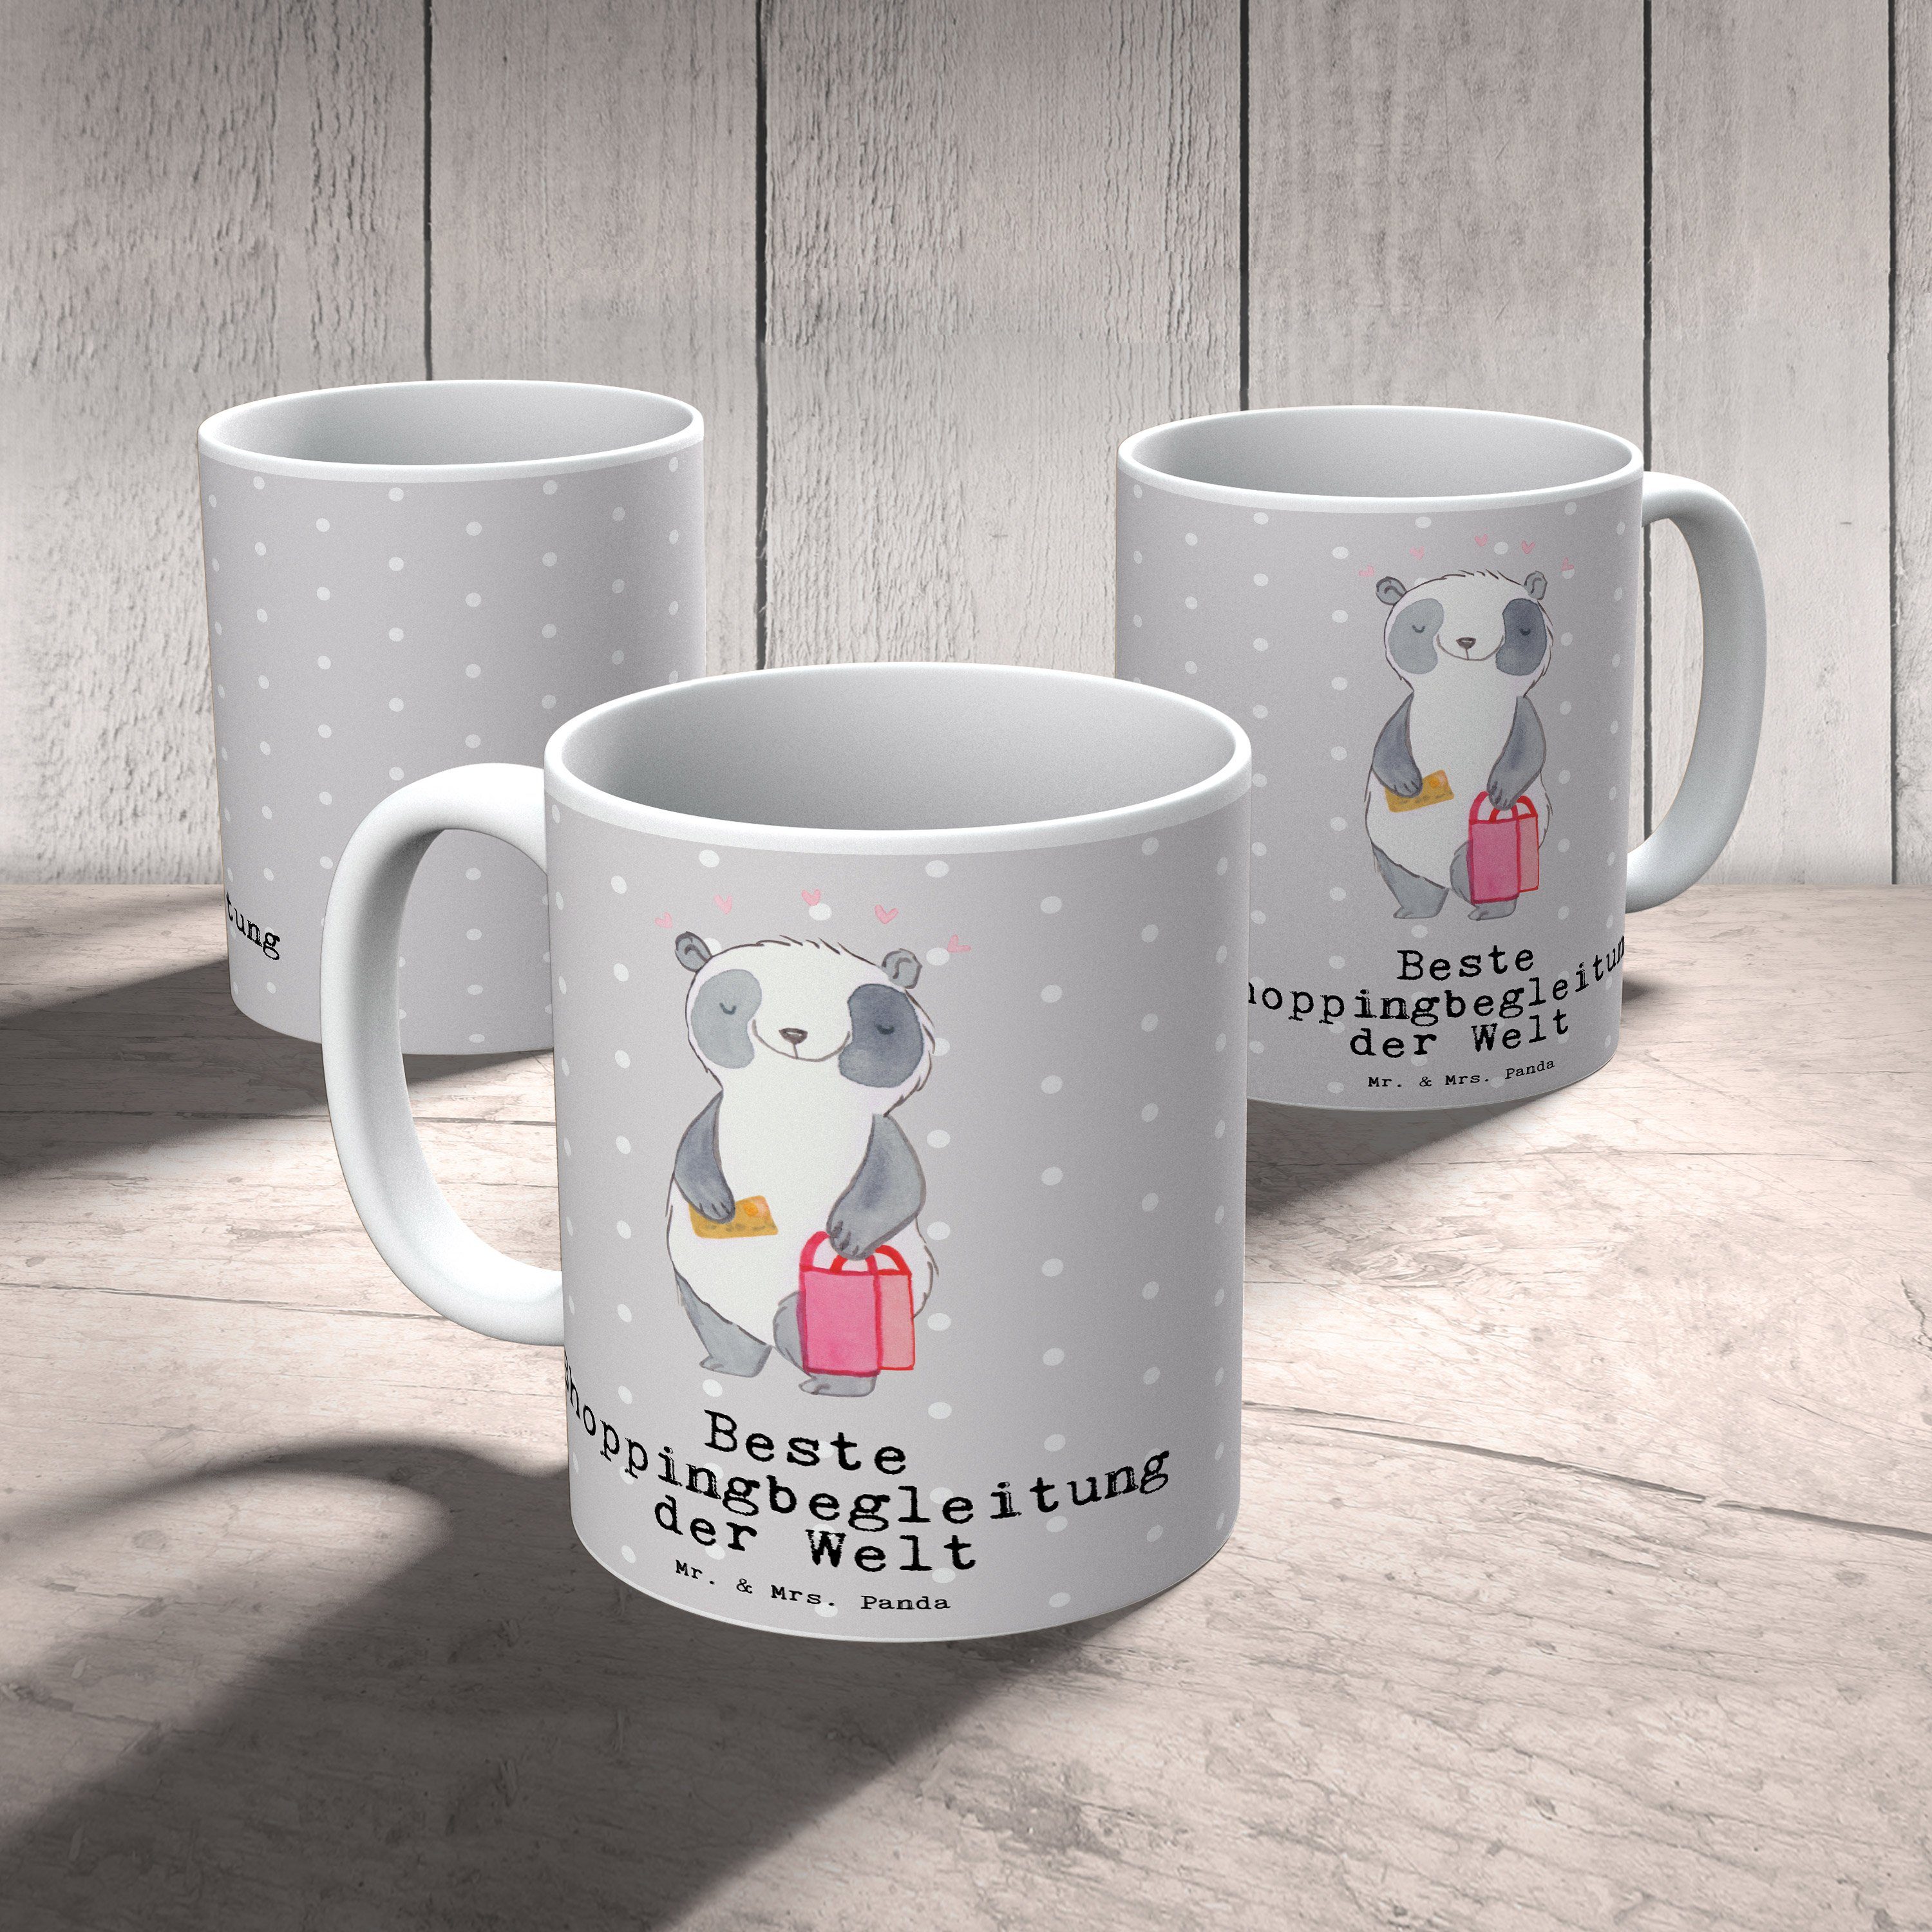 Tasse der Grau Pastell Mrs. - Panda Geschenk, Panda Welt Mr. Ge, Keramik Beste & - Shoppingbegleitung